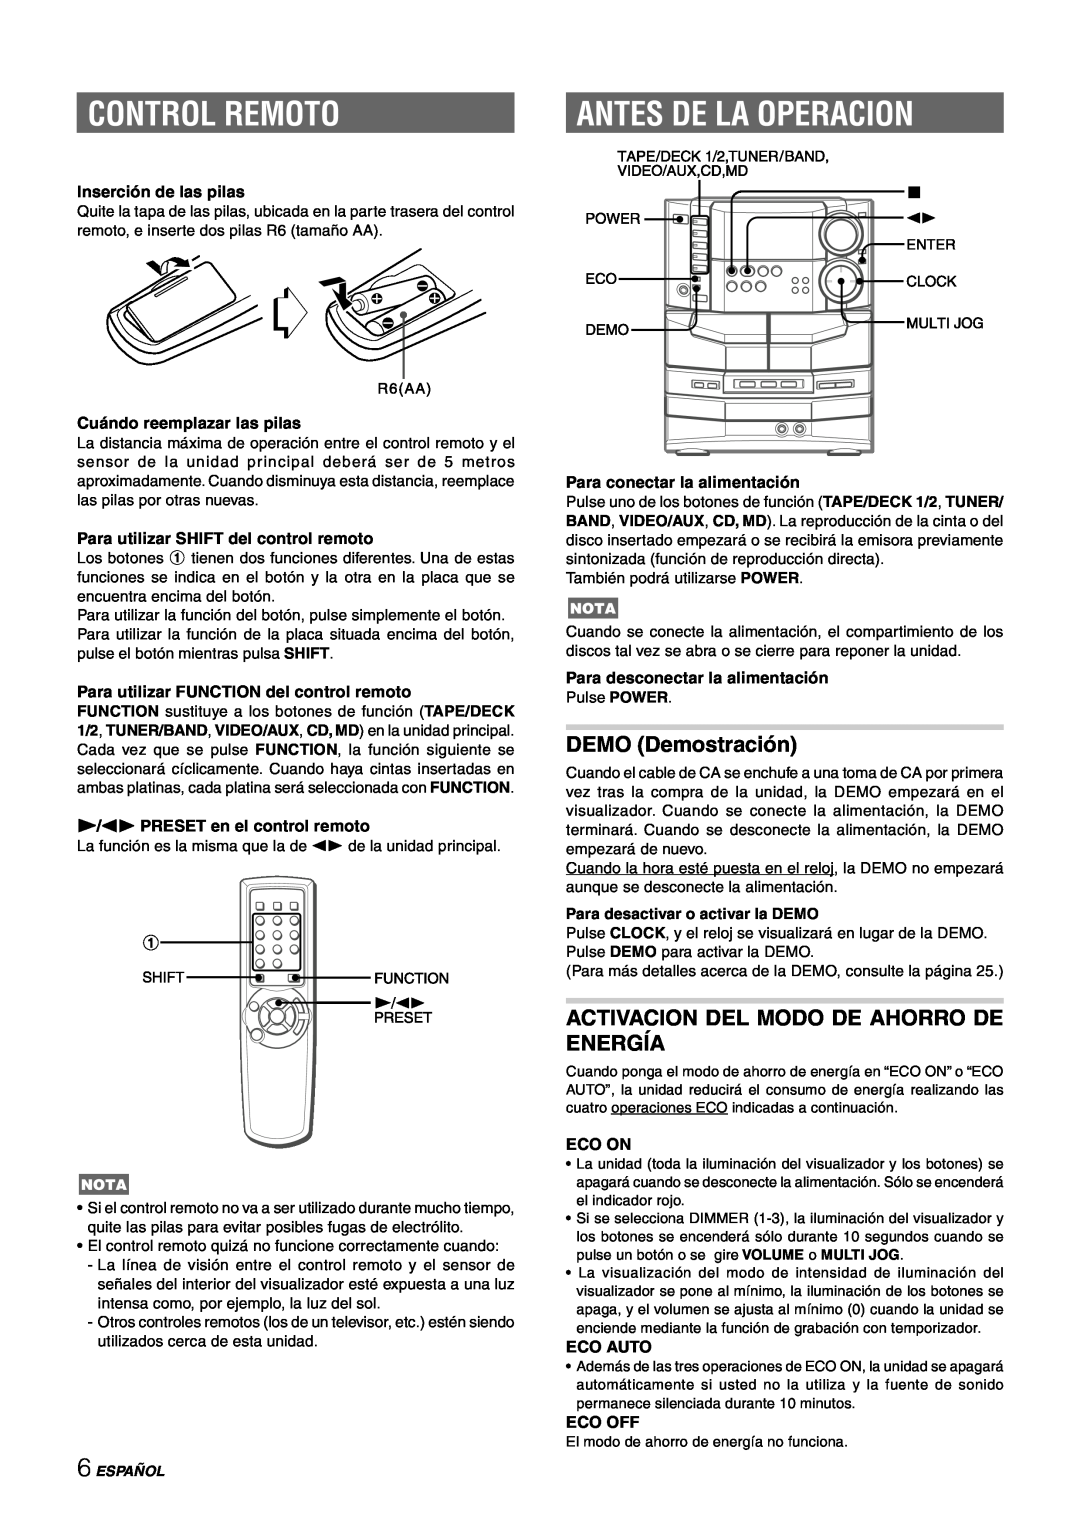 Sony NSX-AJ80 Control Remoto, Antes De La Operacion, DEMO Demostración, Activacion Del Modo De Ahorro De Energía, Eco On 